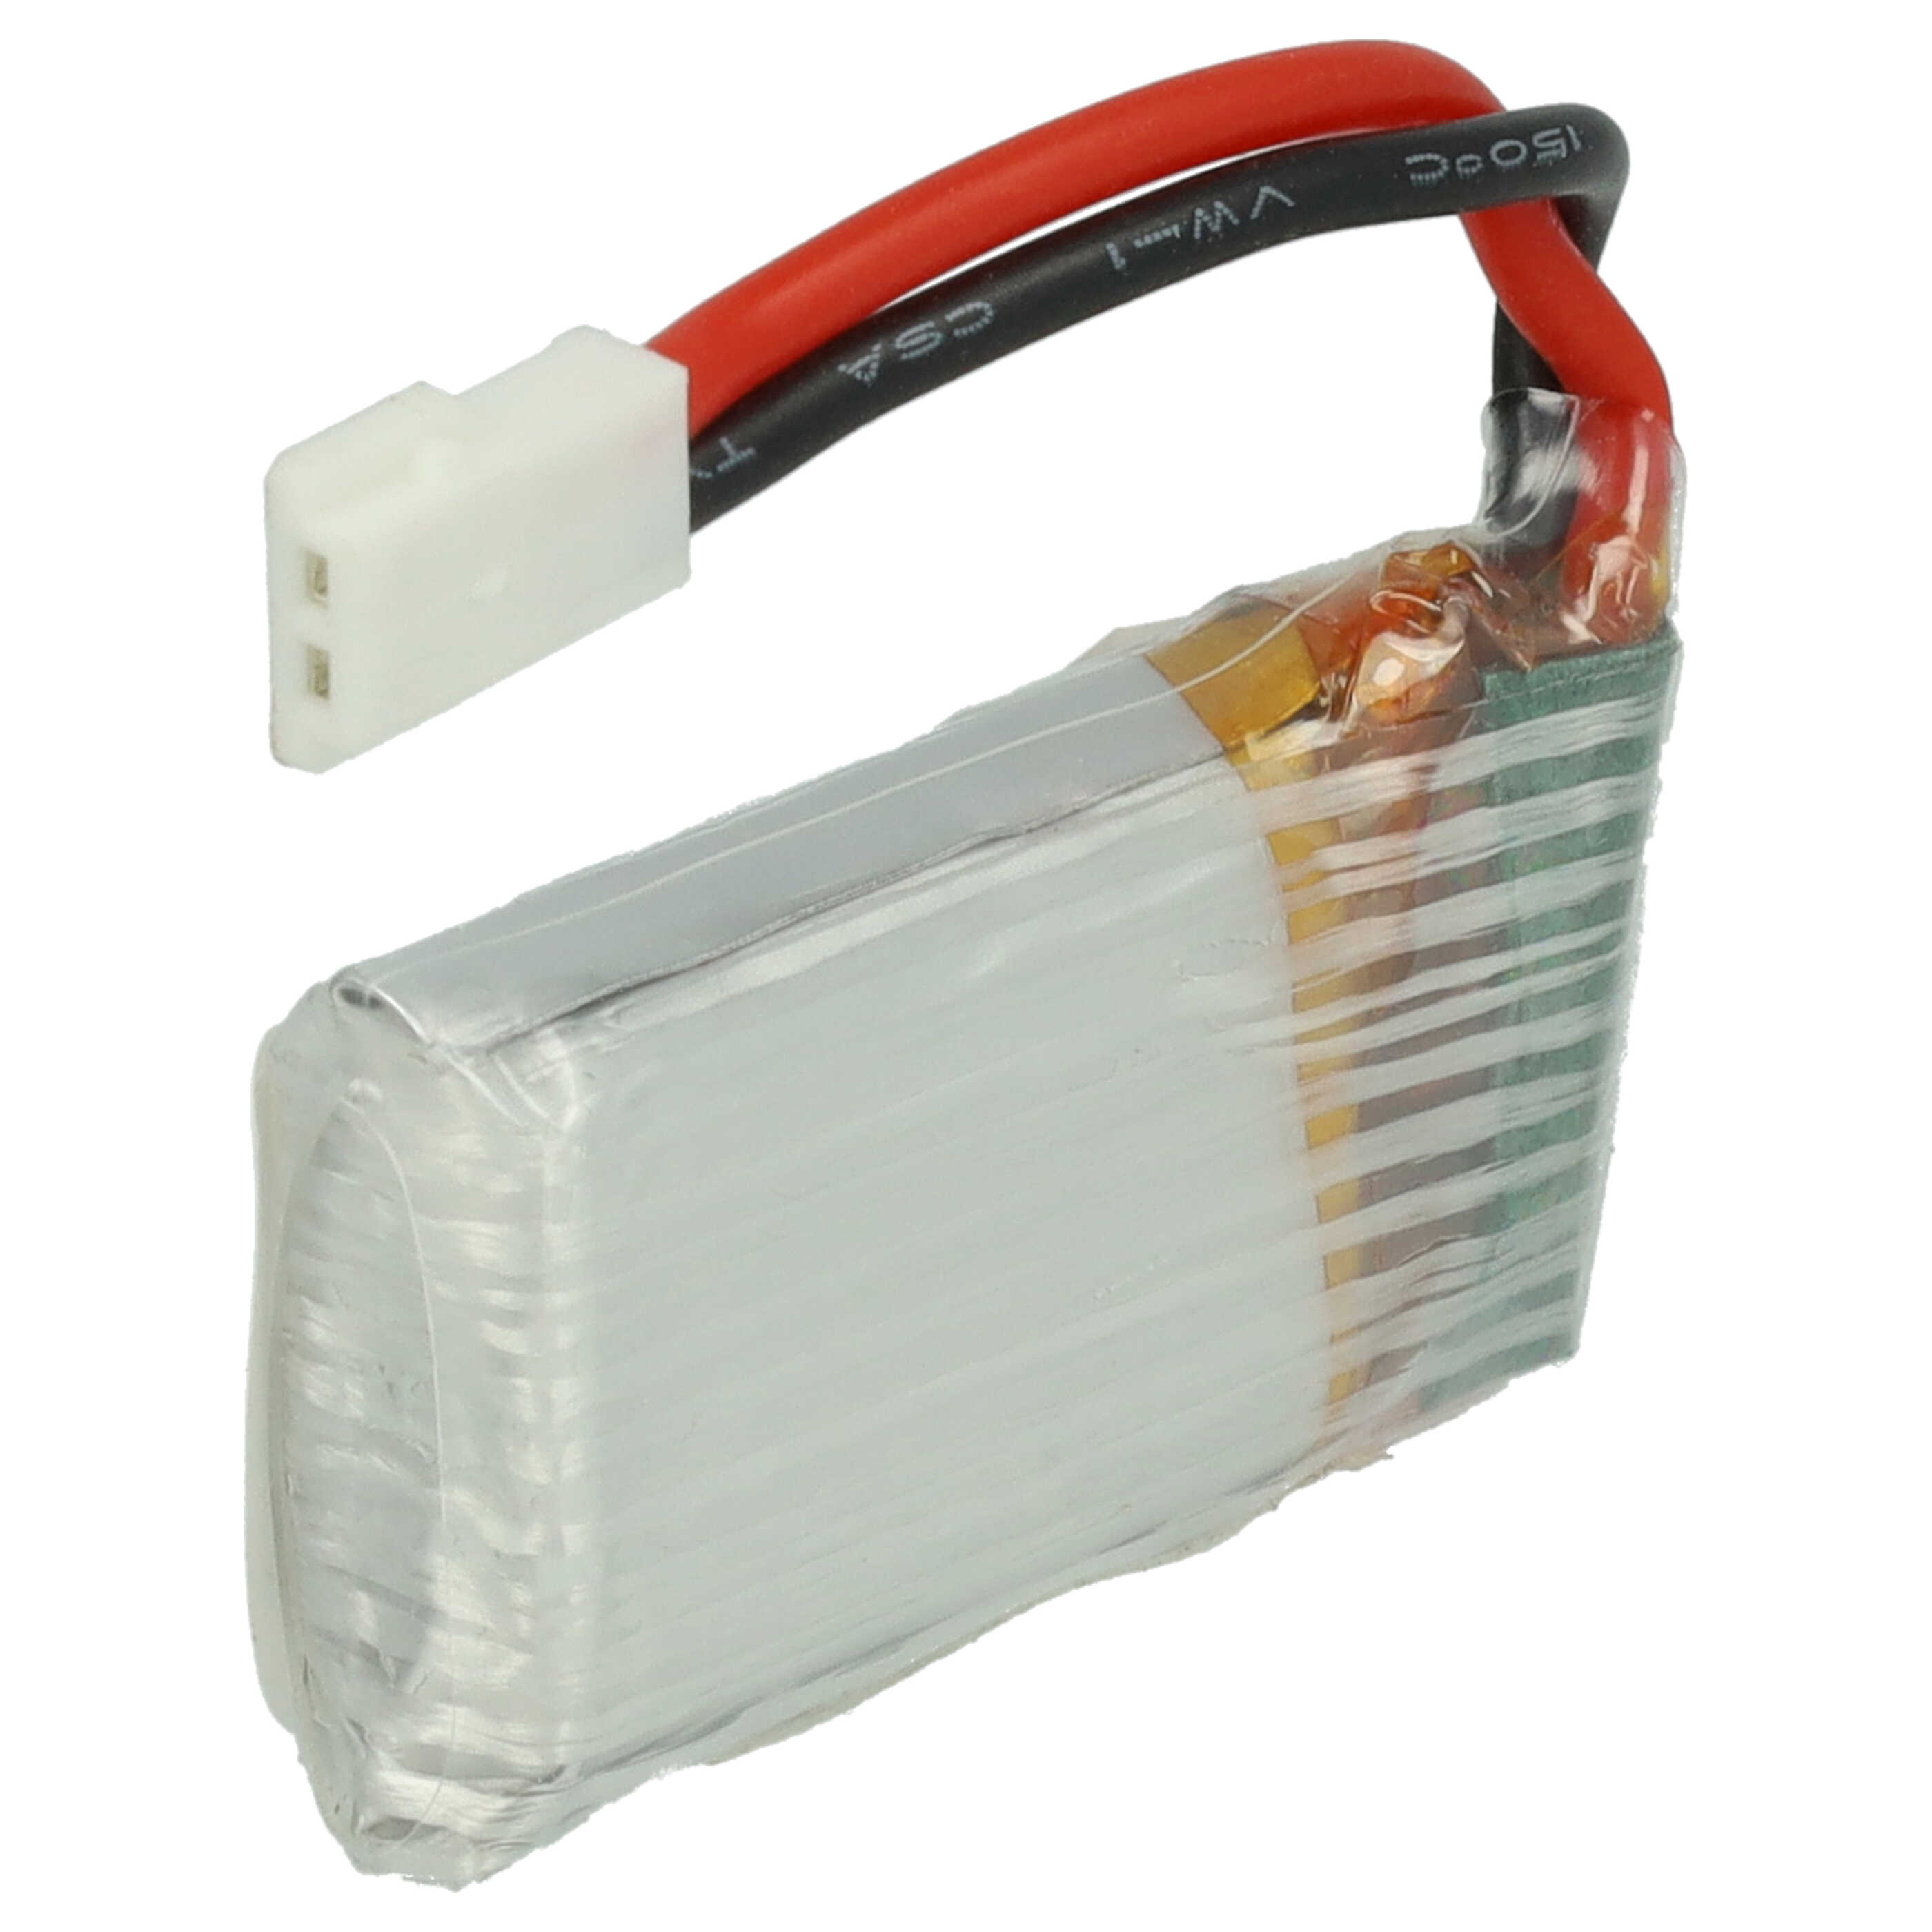 Akumulator do modeli zdalnie sterowanych RC - 350 mAh 3,7 V LiPo, XH 2.54 (AWG 20)